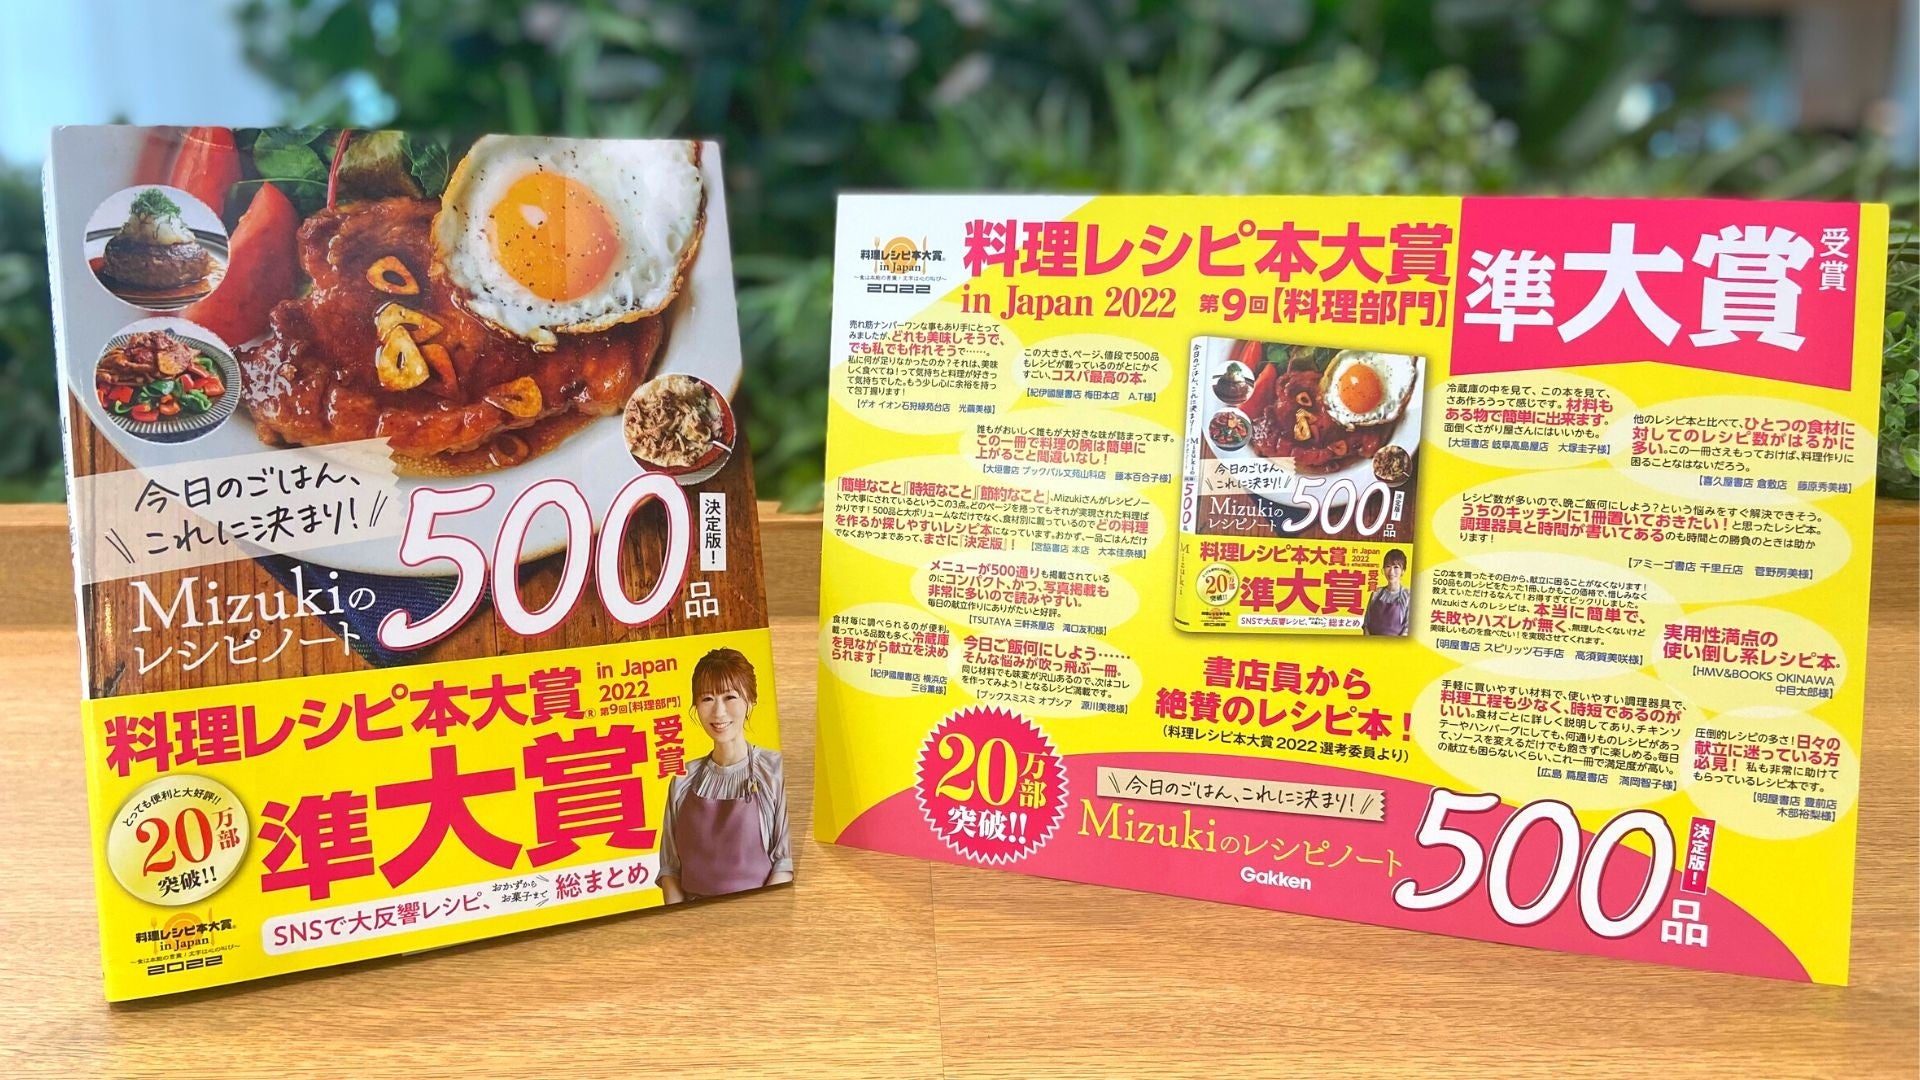 沖縄特産のシークヮーサー使用、青切りの爽やかな香りと酸味を再現した新感覚のチーズケーキを元祖紅いもタルトの御菓子御殿が期間限定で販売。